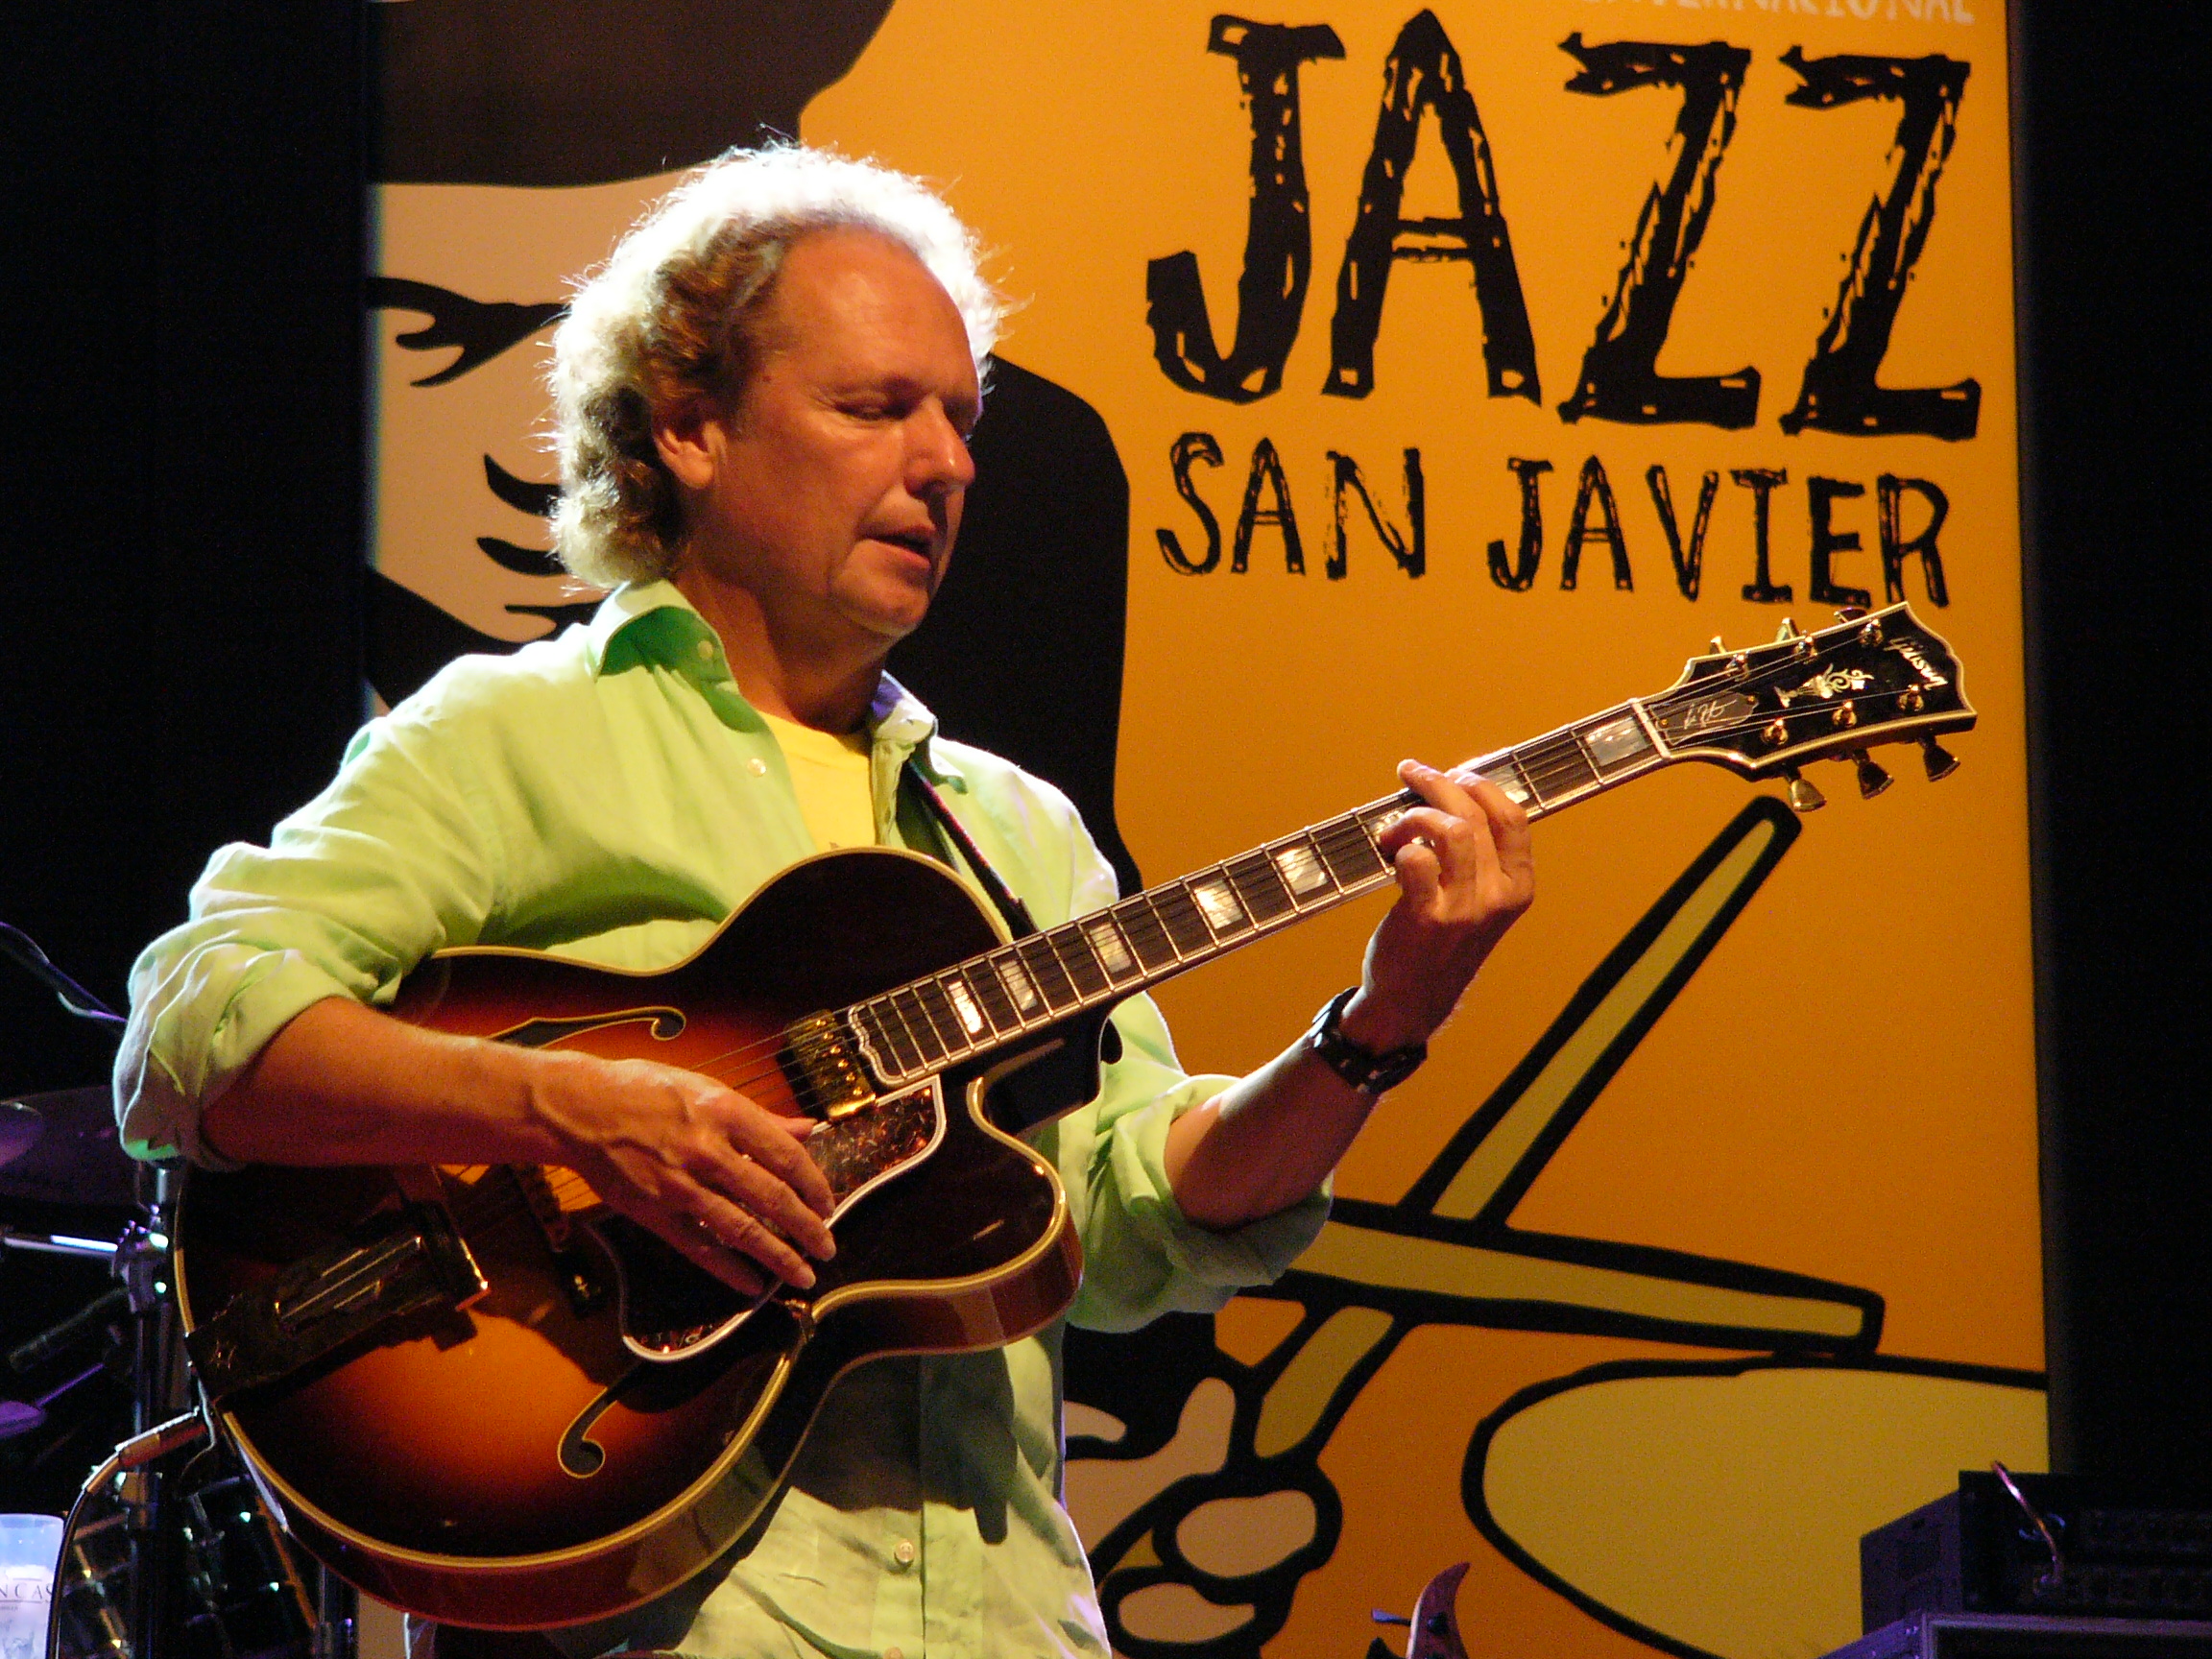 Web Oficial del Festival Internacional de Jazz de San Javier